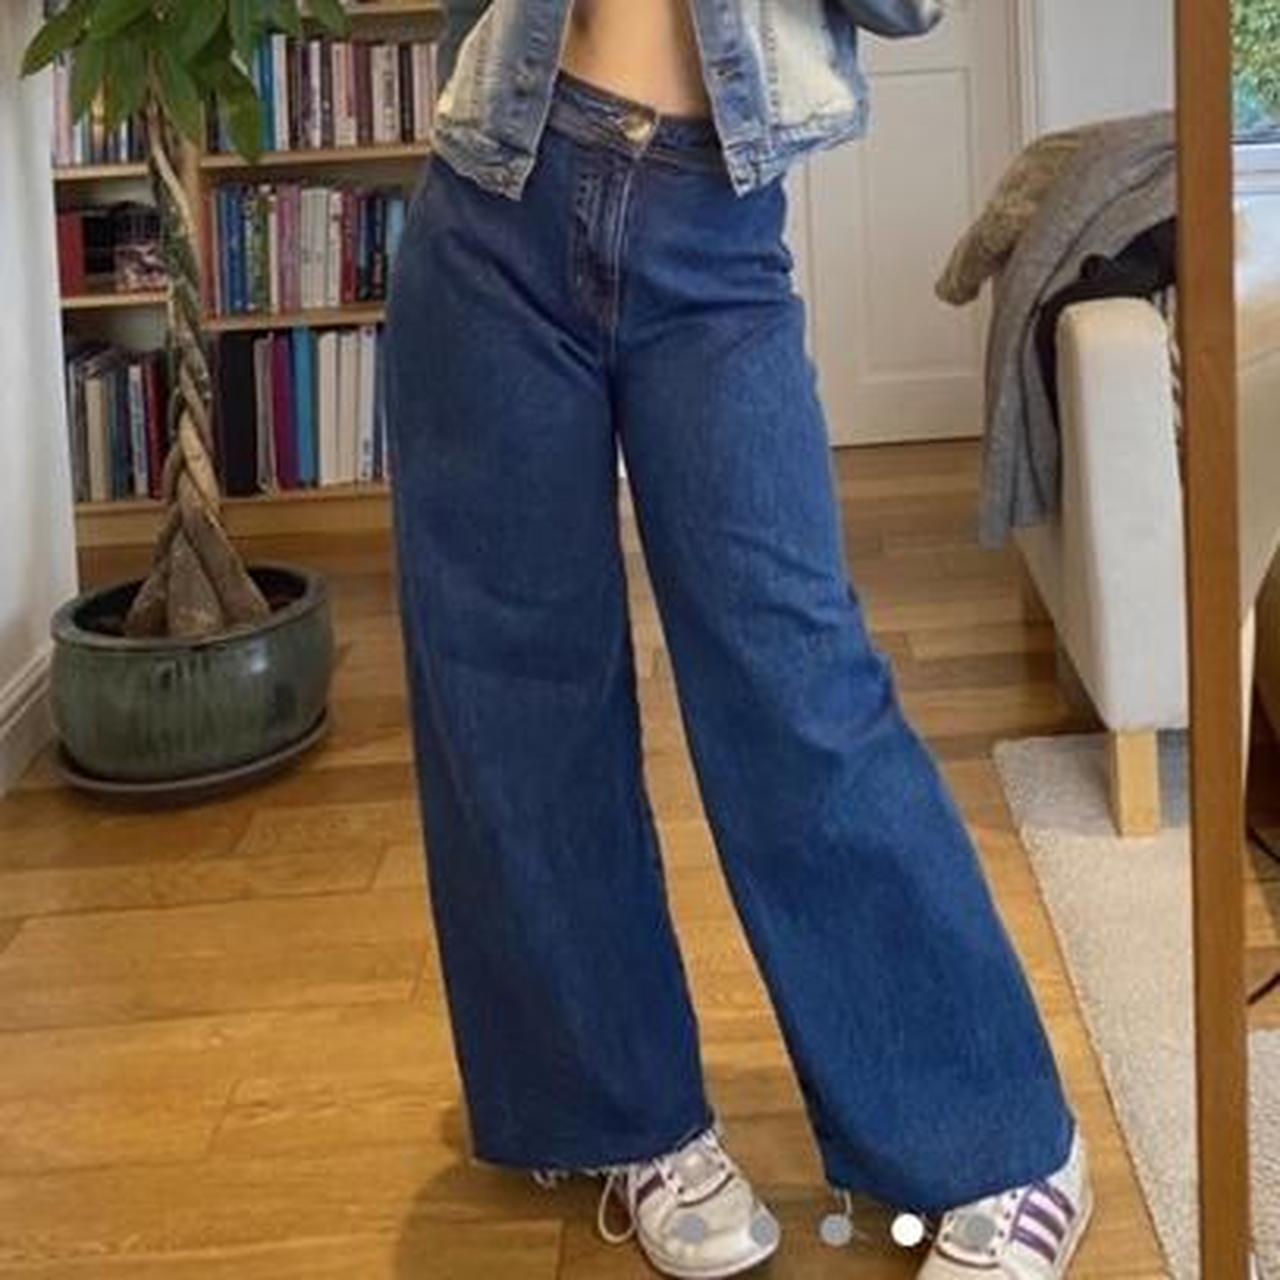 Wide leg jeans - Depop